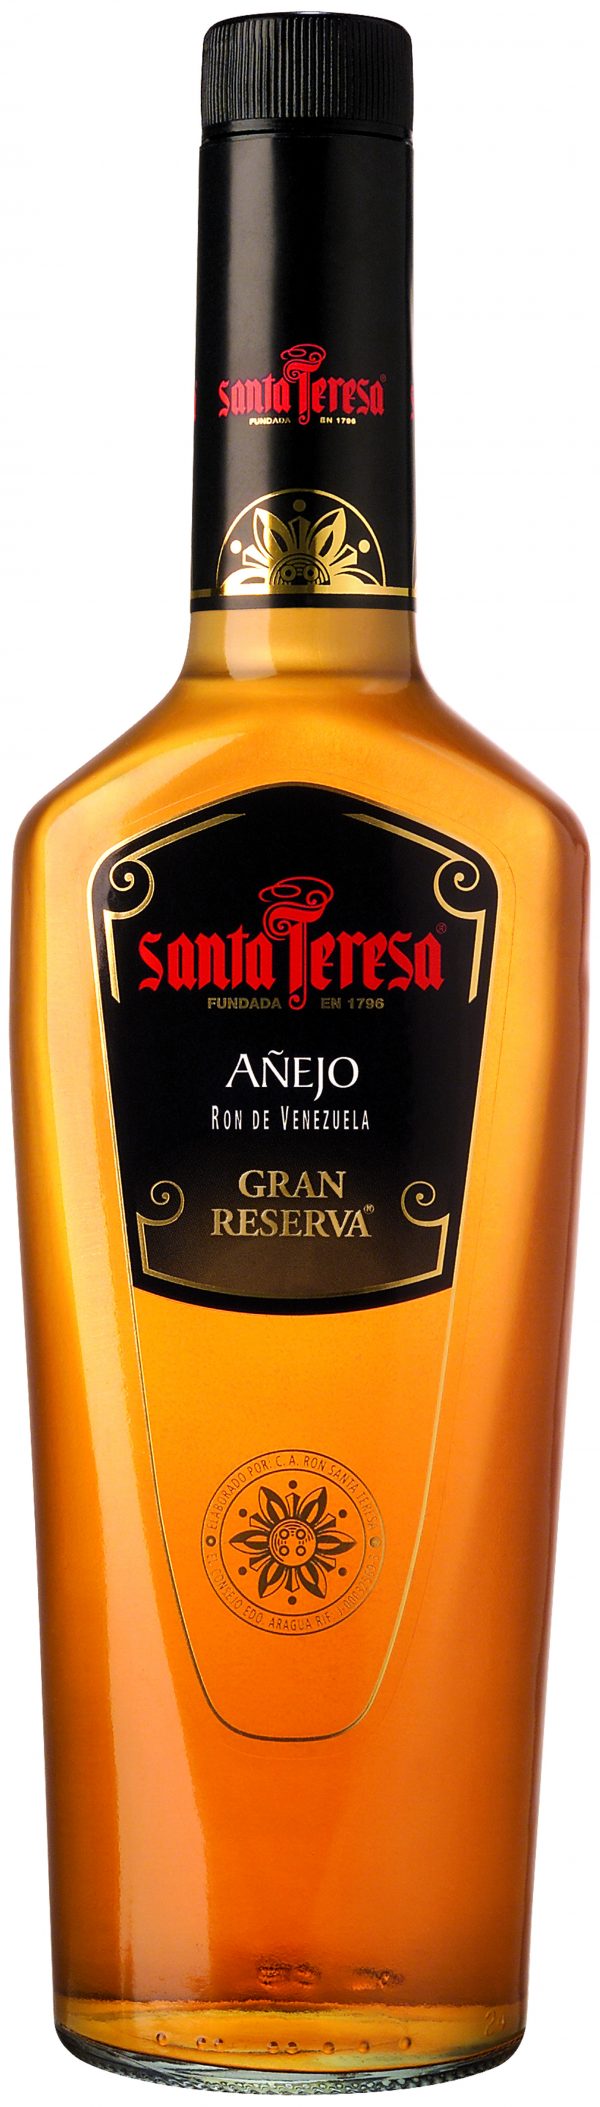 Zoom to enlarge the Santa Teresa Anejo Gran Reserva Rum